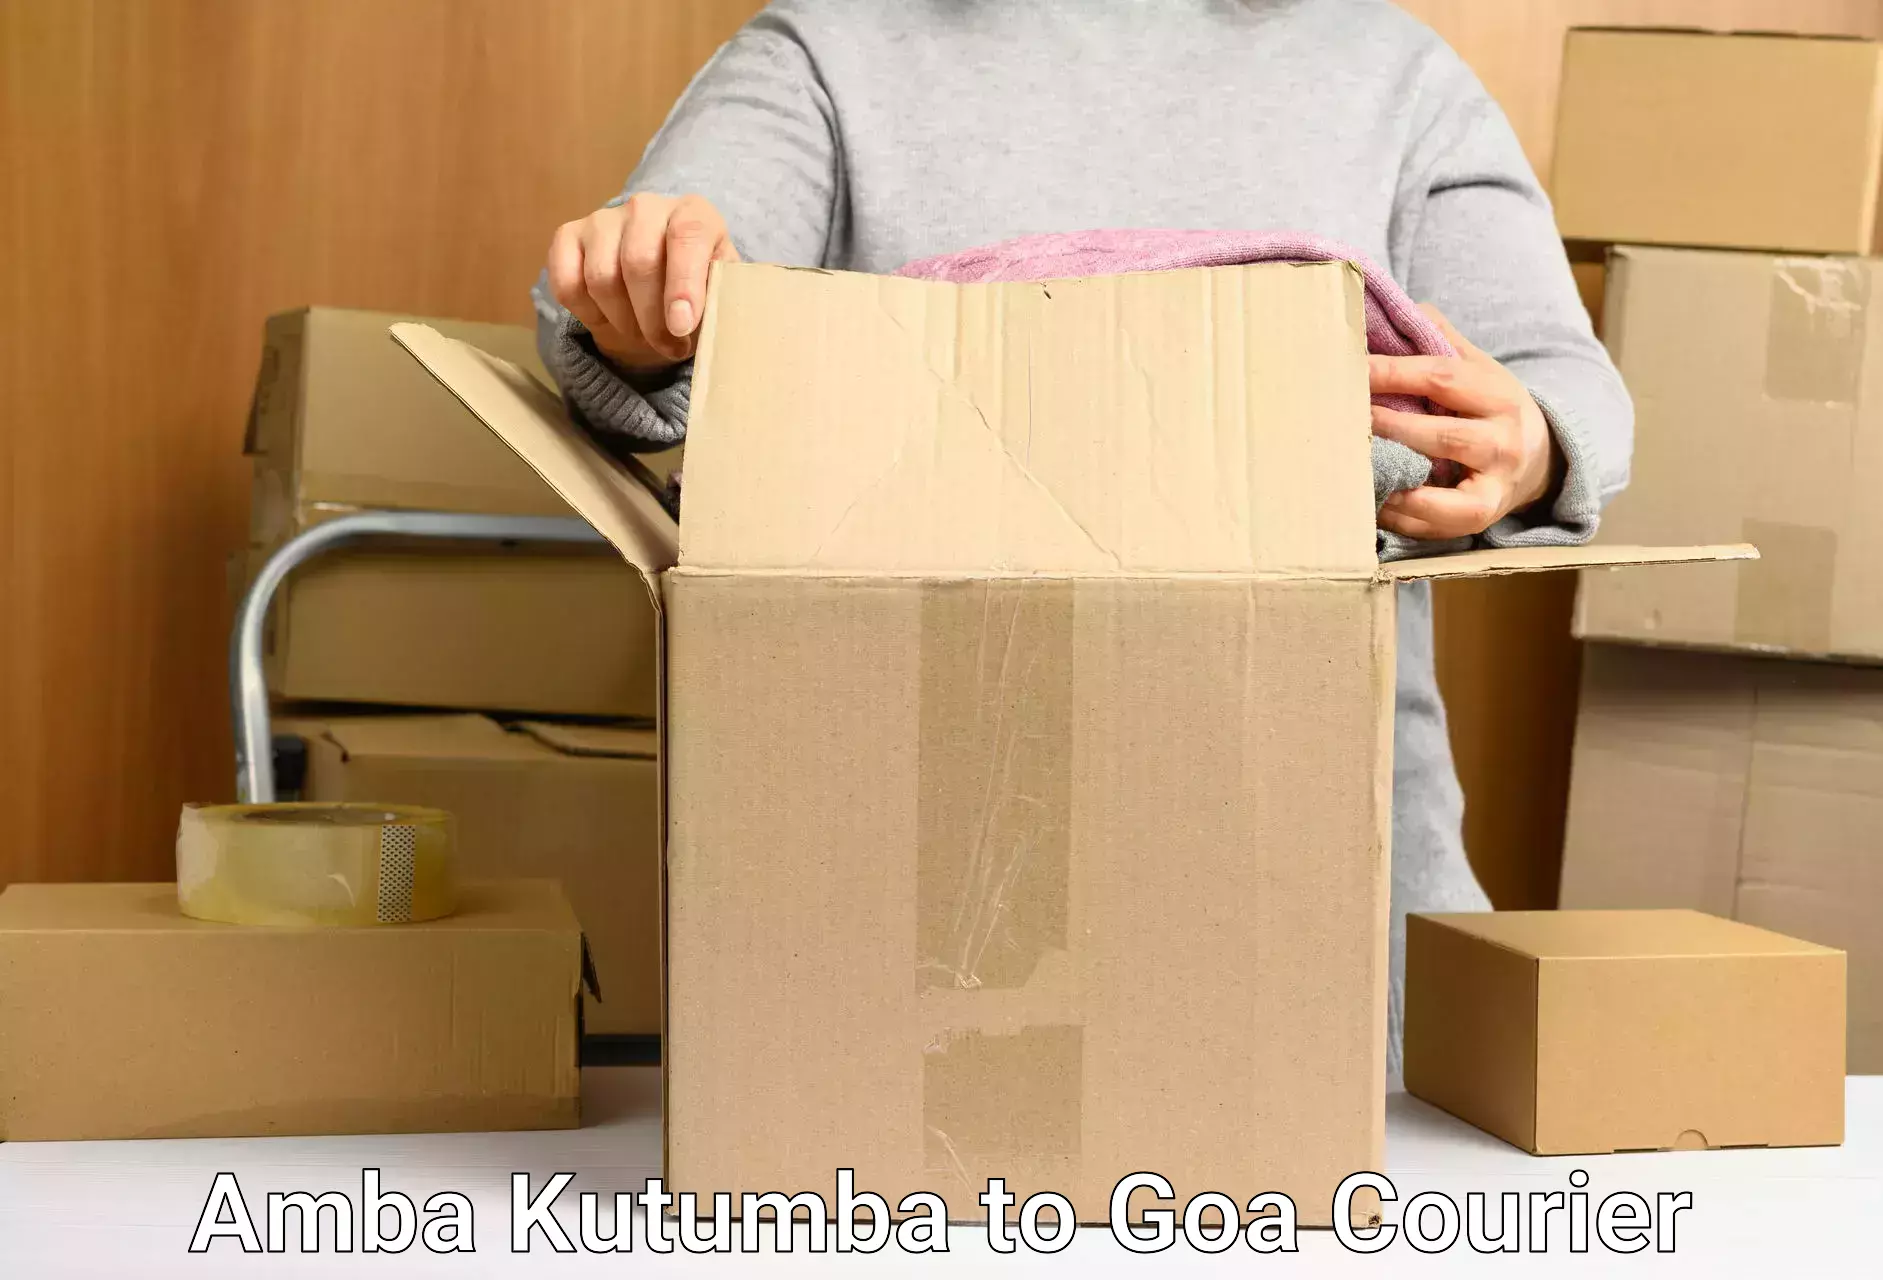 Nationwide courier service Amba Kutumba to NIT Goa